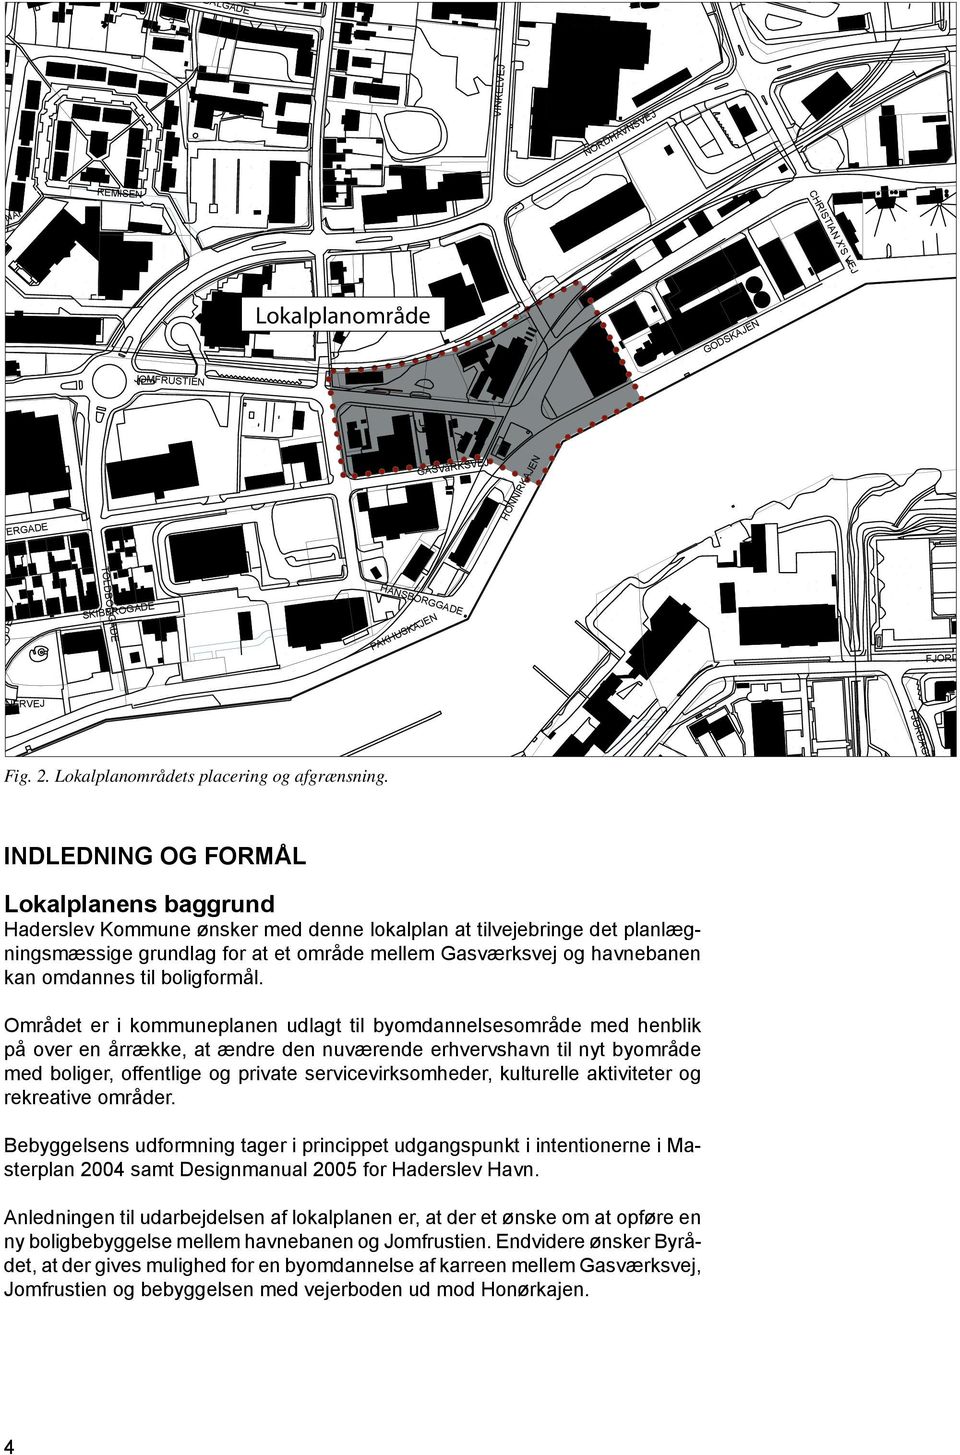 INDLEDNING OG FORMÅL Lokalplanens baggrund Haderslev Kommune ønsker med denne lokalplan at tilvejebringe det planlægningsmæssige grundlag for at et område mellem Gasværksvej og havnebanen kan